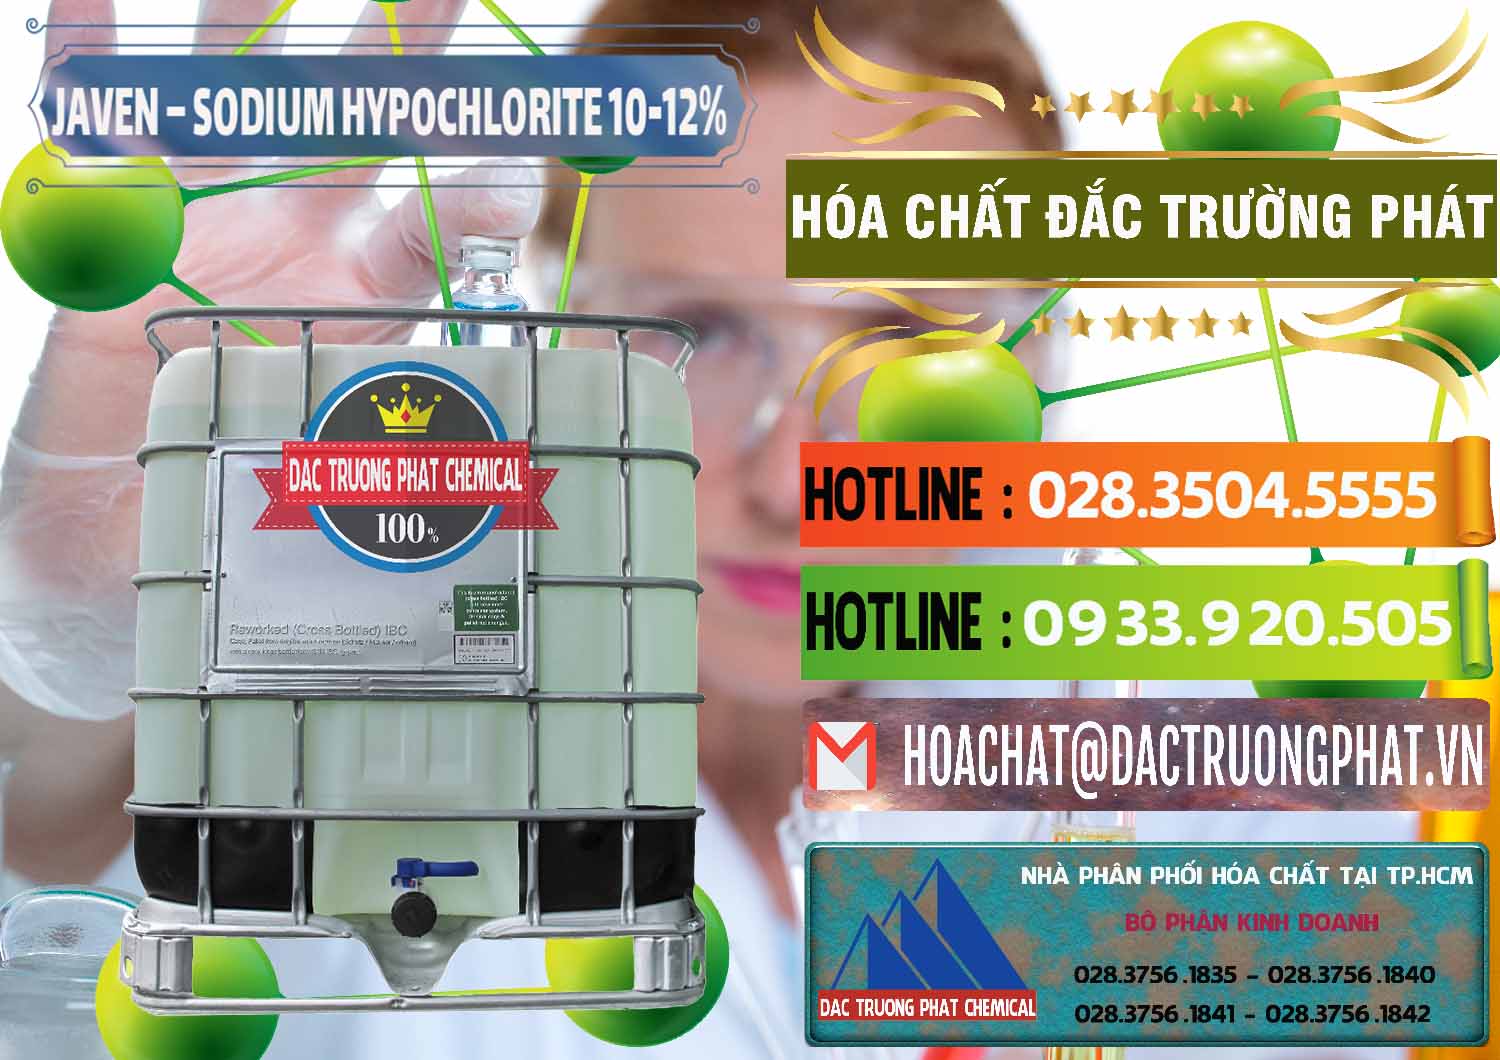 Nhà cung ứng _ phân phối Javen - Sodium Hypochlorite 10-12% Việt Nam - 0188 - Chuyên kinh doanh và cung cấp hóa chất tại TP.HCM - cungcaphoachat.com.vn